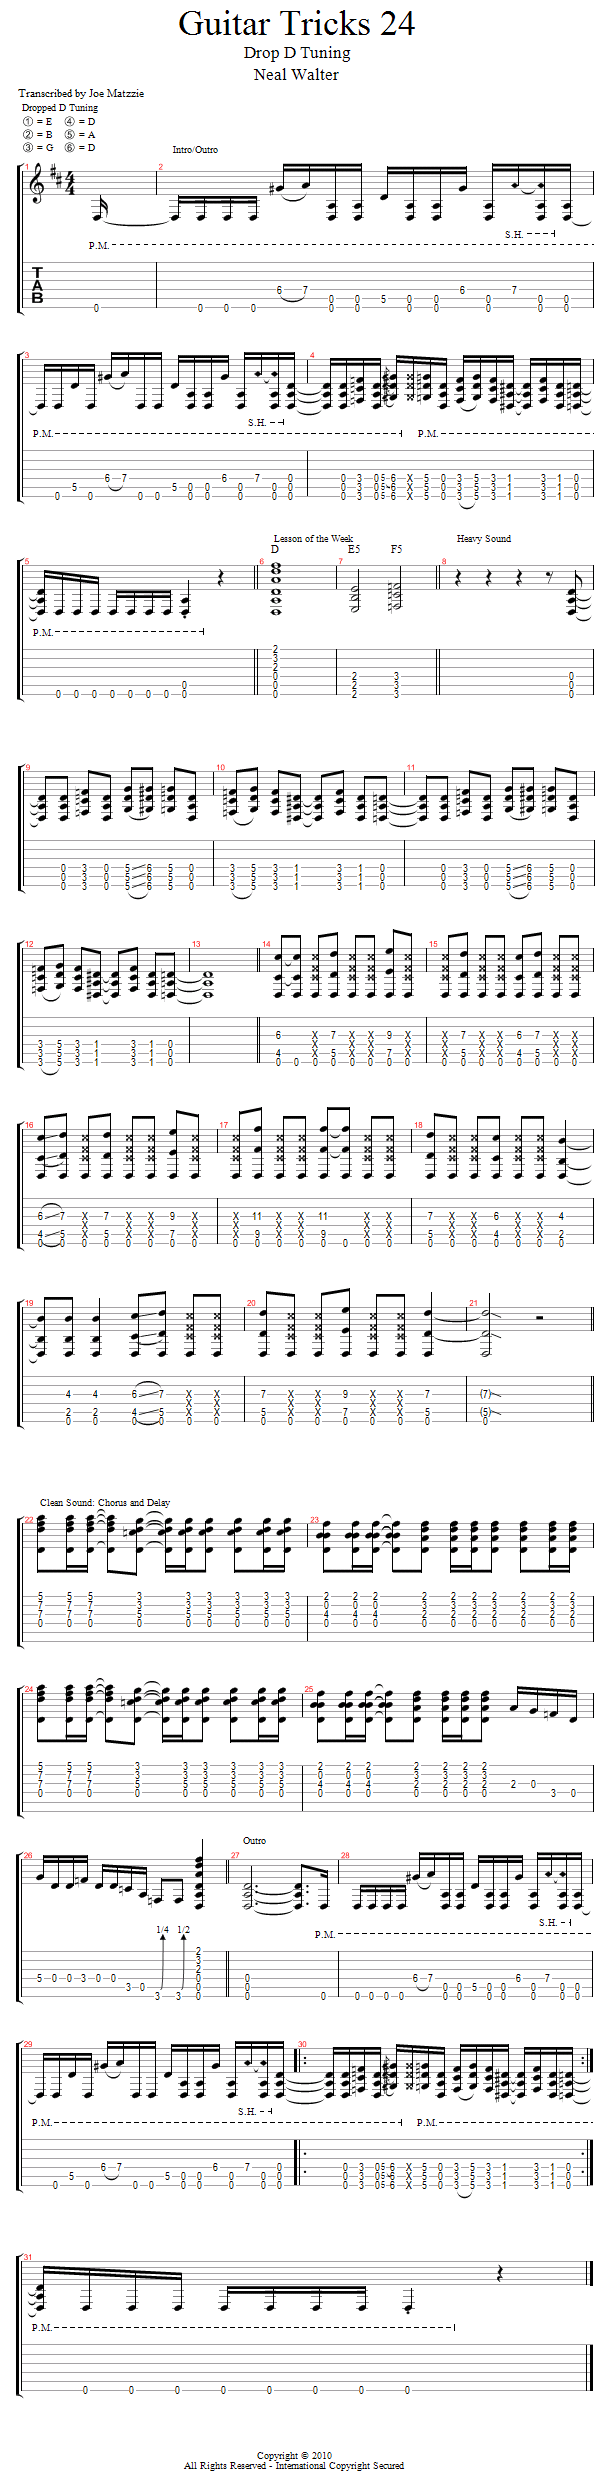 Guitar Tricks 24: Drop D Tuning song notation